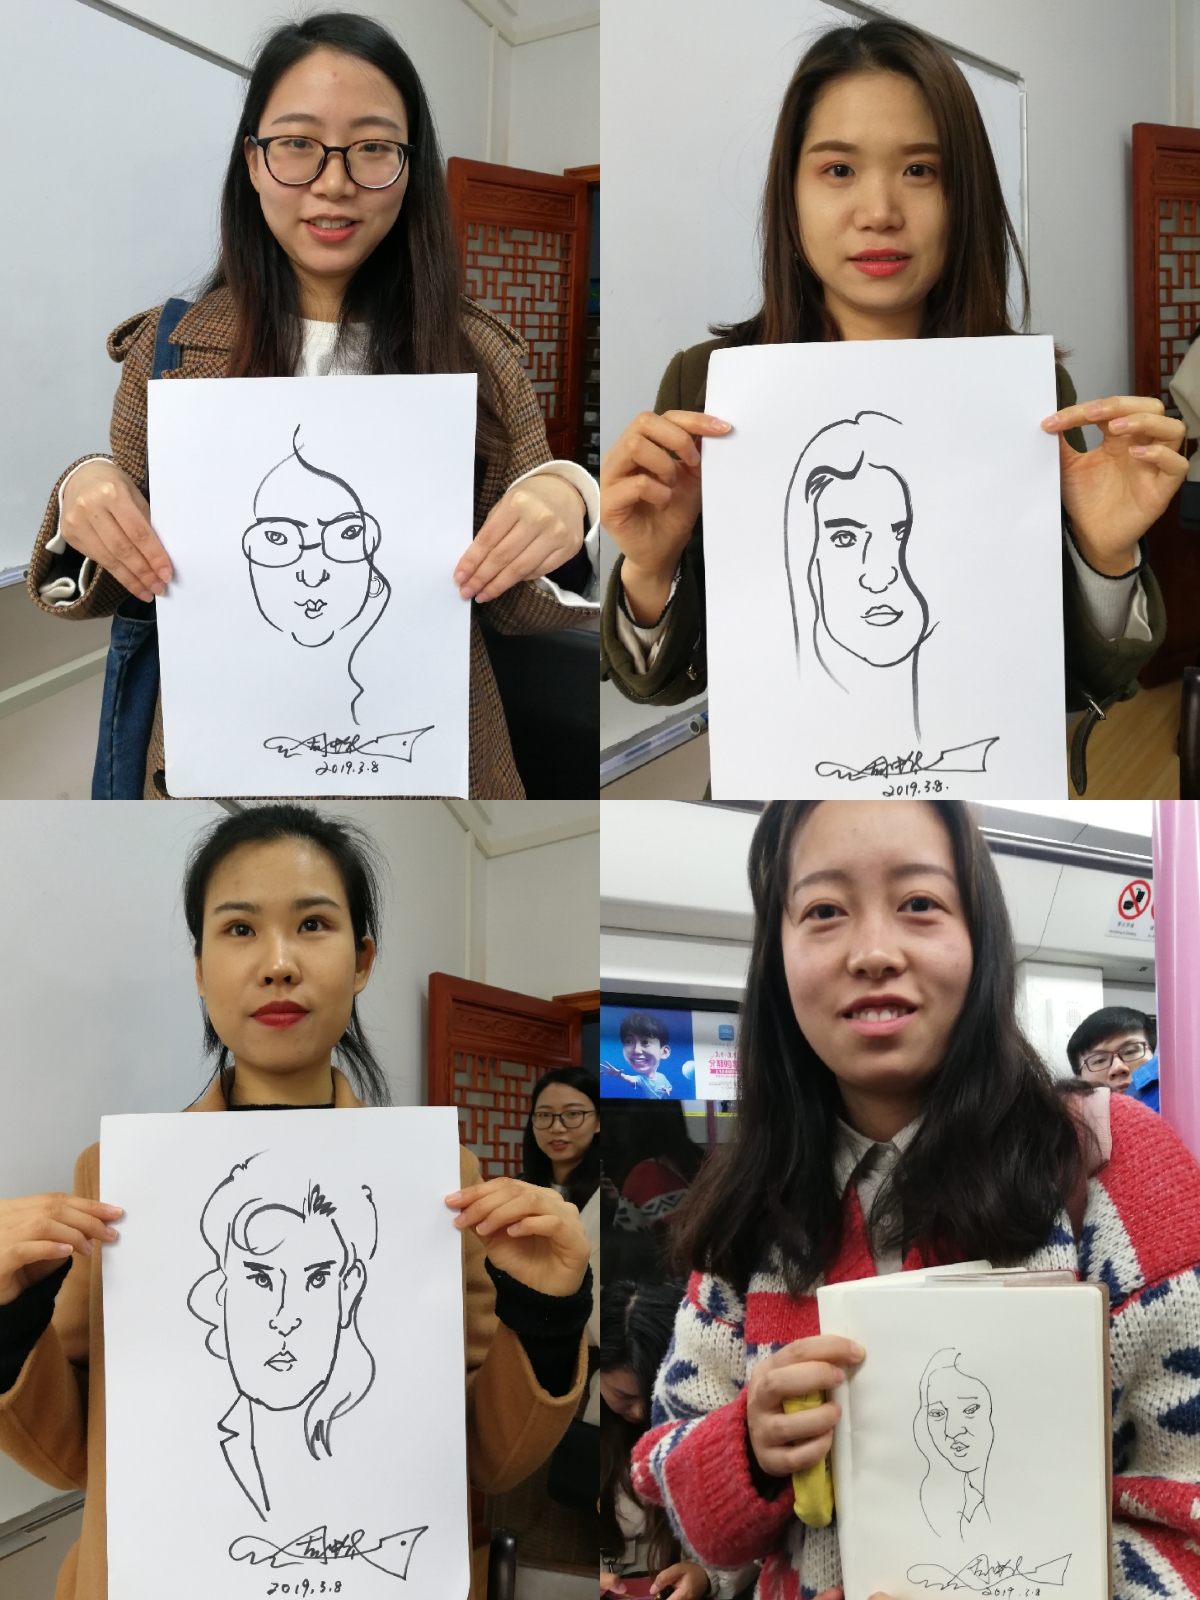 国际奖获奖漫画家教授30秒画像震惊在华外国朋友 为3 8国际妇女节添彩 武汉市